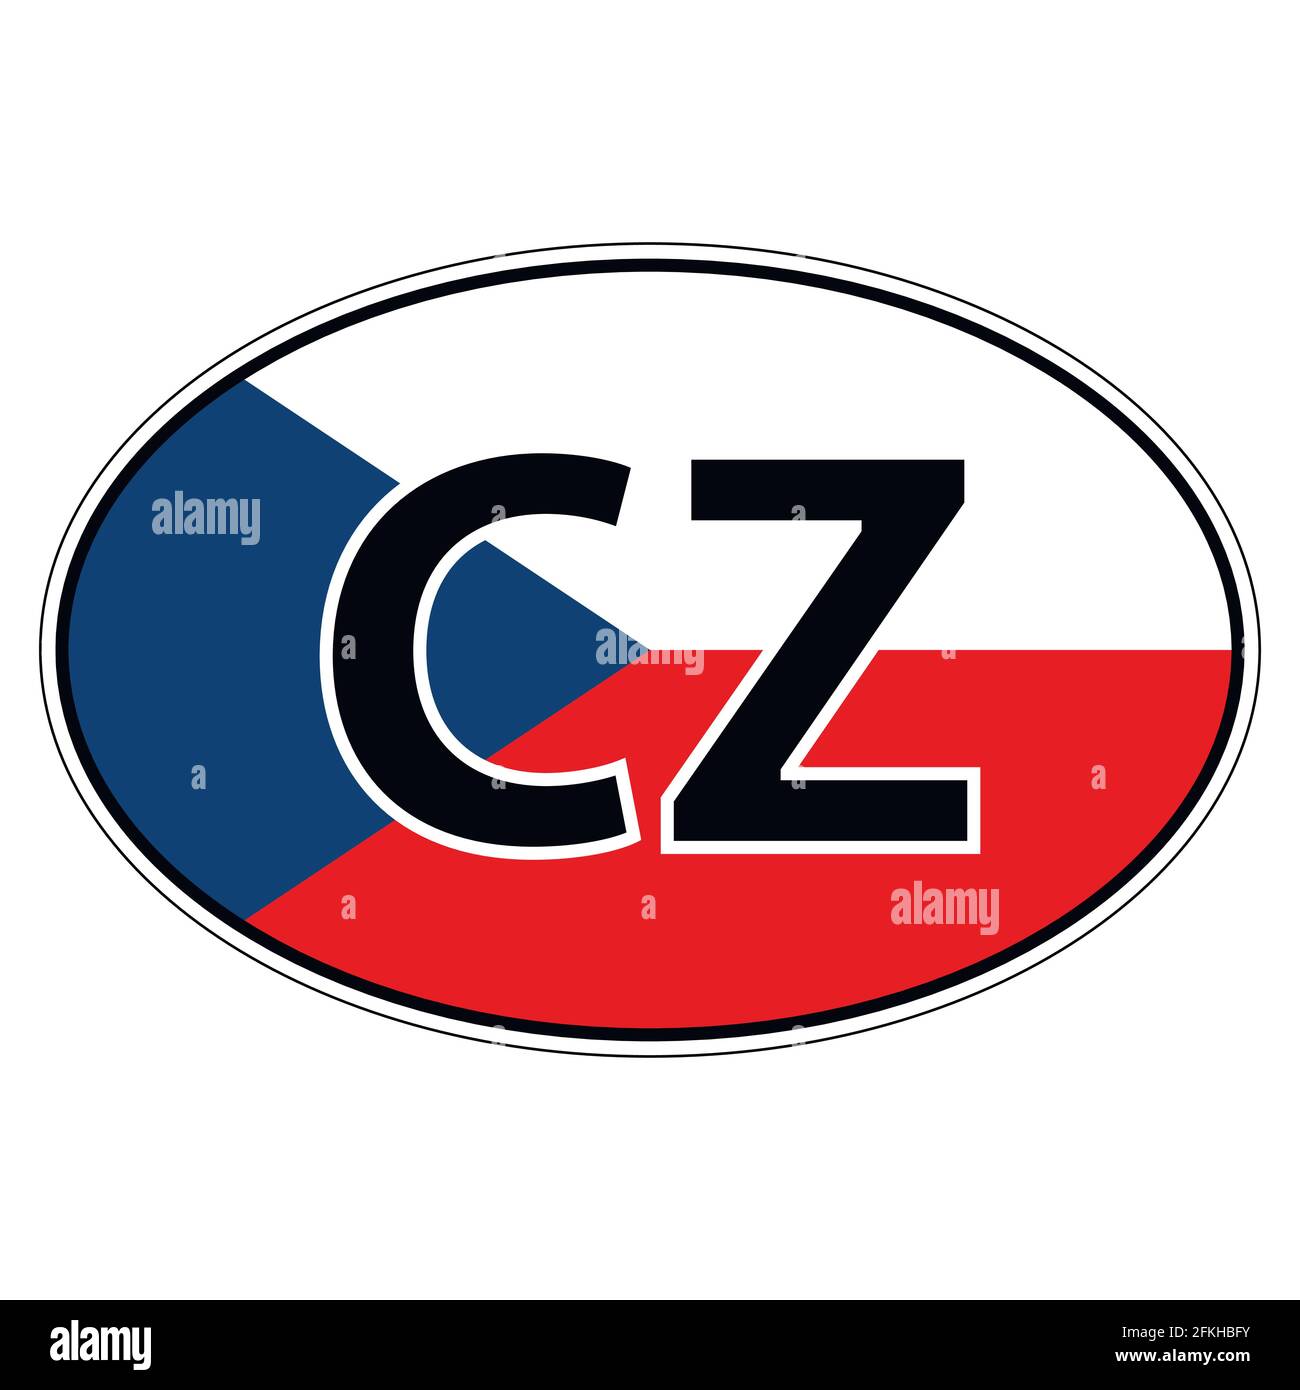 Adesivo su auto, bandiera Czechia, Chech, Repubblica Ceca Illustrazione Vettoriale